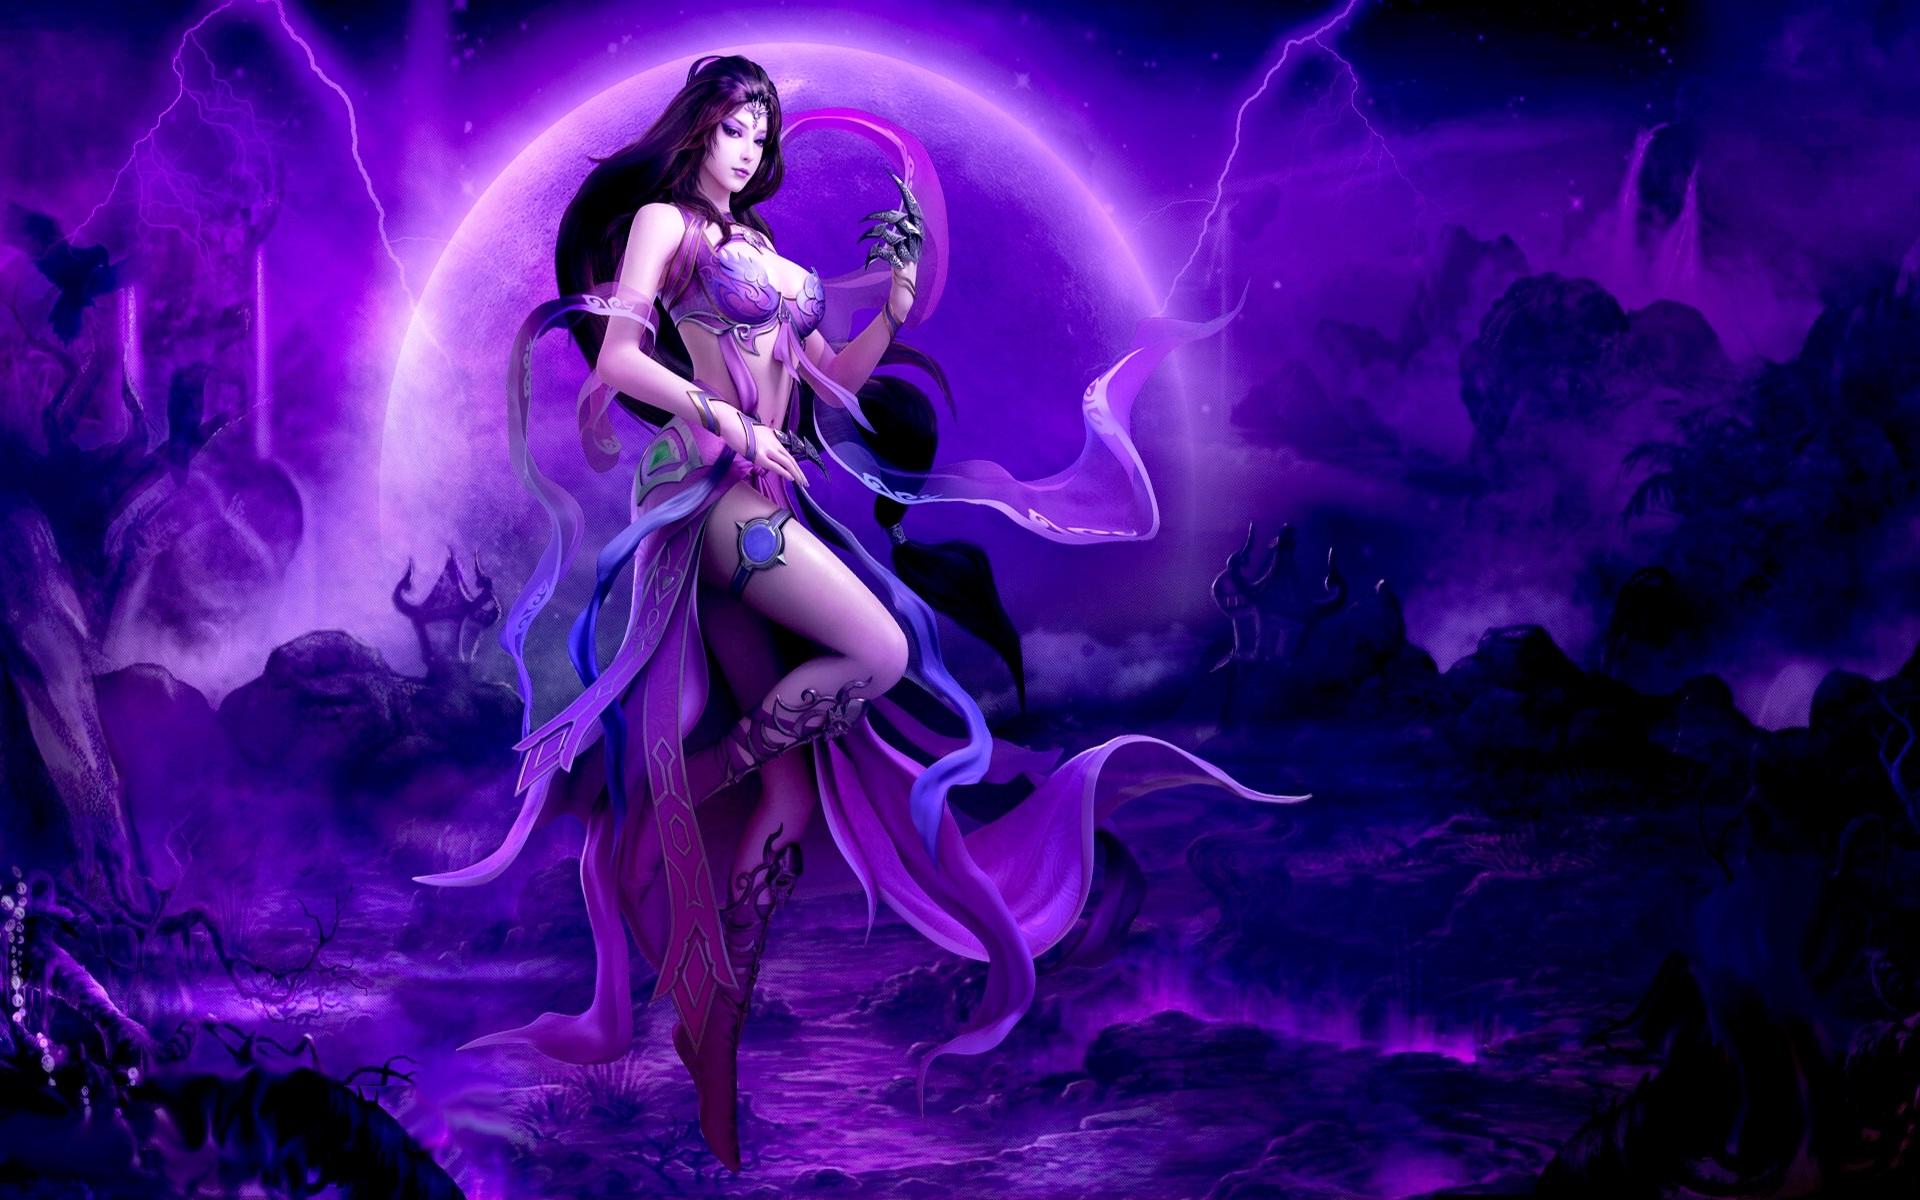 Beautiful angel in purple shine heaven. HD Wallpaper Rocks